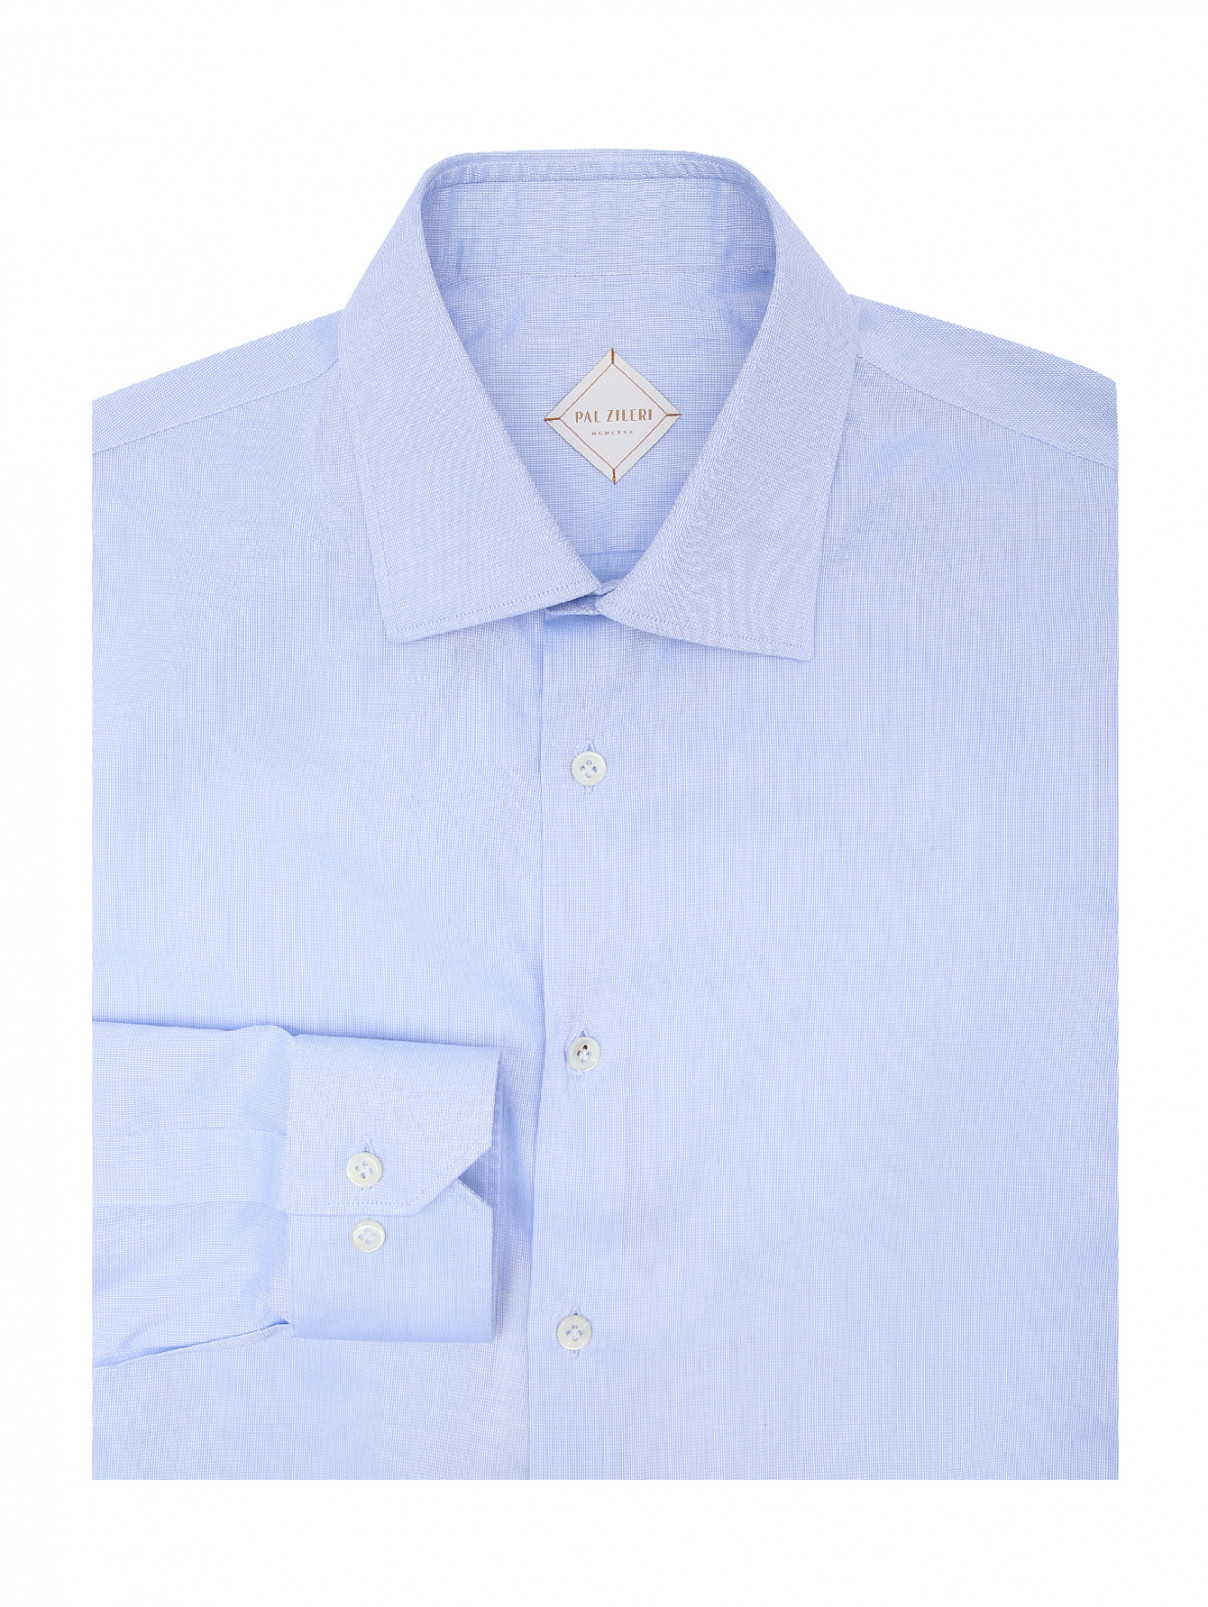 Рубашка однотонная из хлопка Pal Zileri  –  Общий вид  – Цвет:  Синий